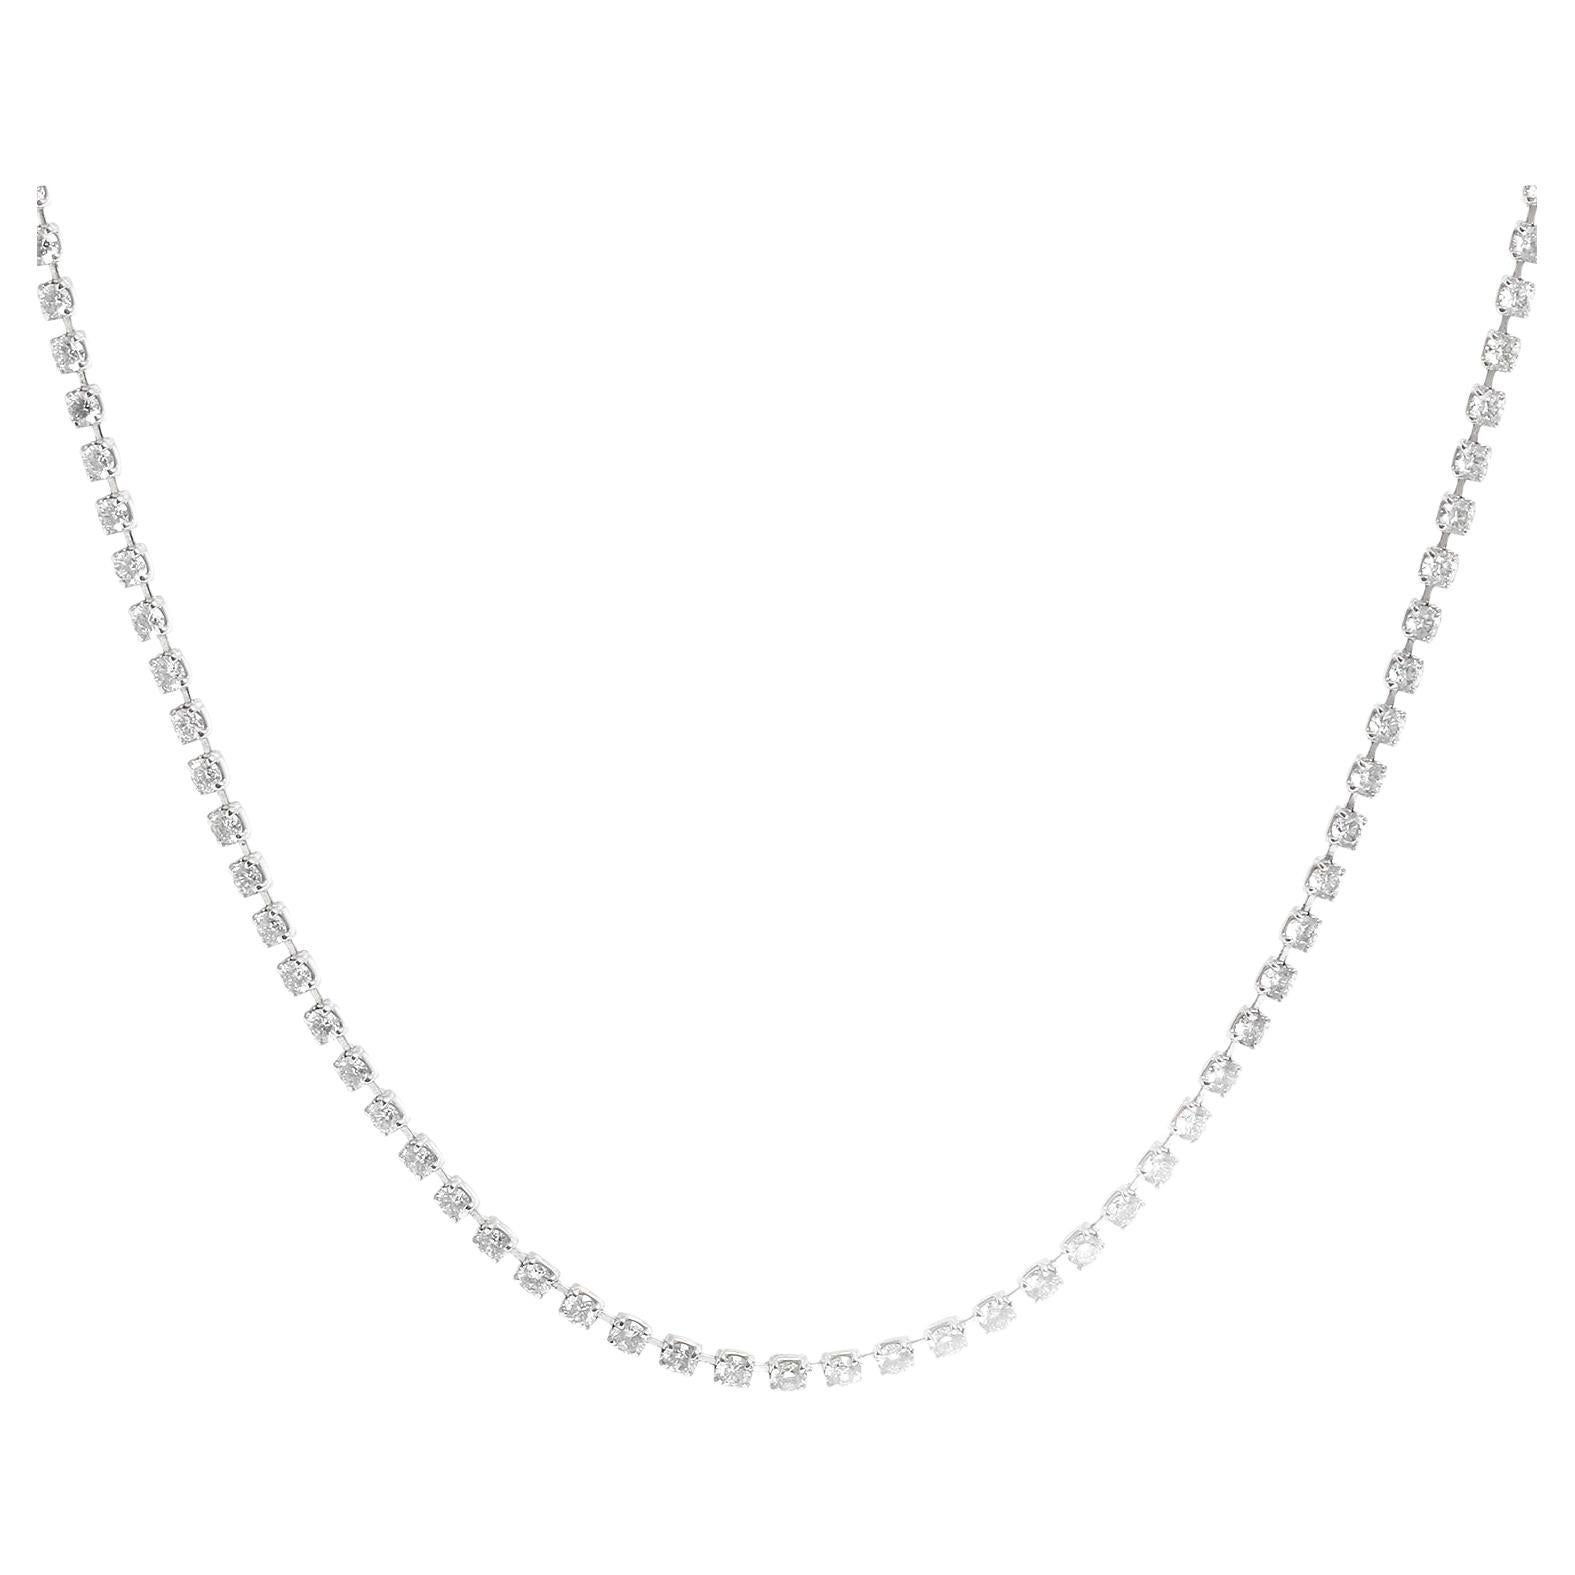 Platinum Tennis Necklace 5.33 carats For Sale